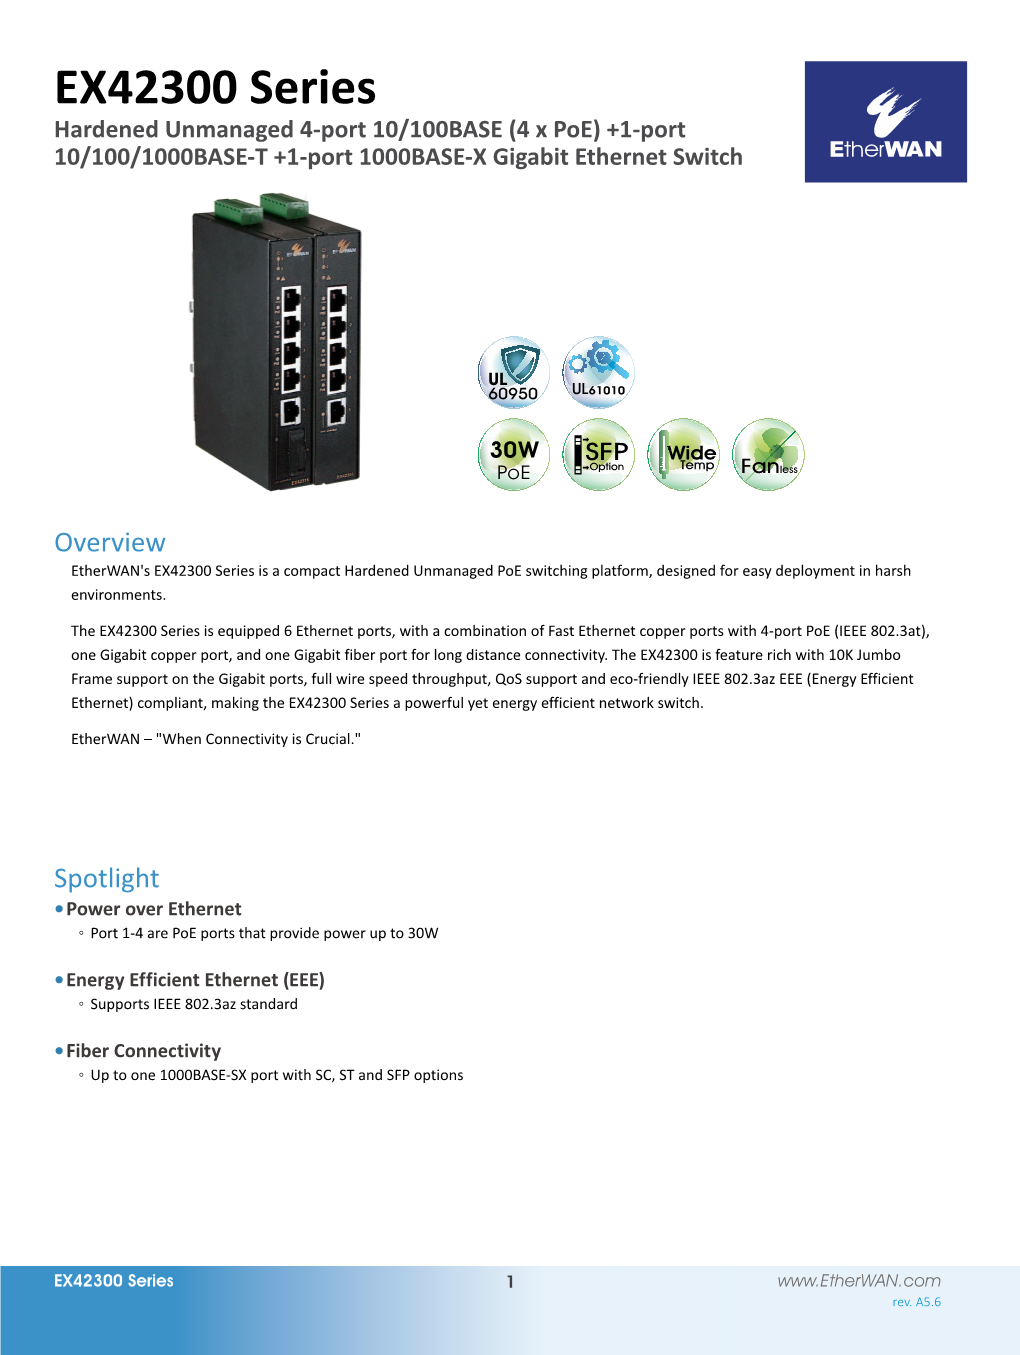 EX42300 Series Hardened Unmanaged 4-Port 10/100BASE (4 X Poe) +1-Port 10/100/1000BASE-T +1-Port 1000BASE-X Gigabit Ethernet Switch